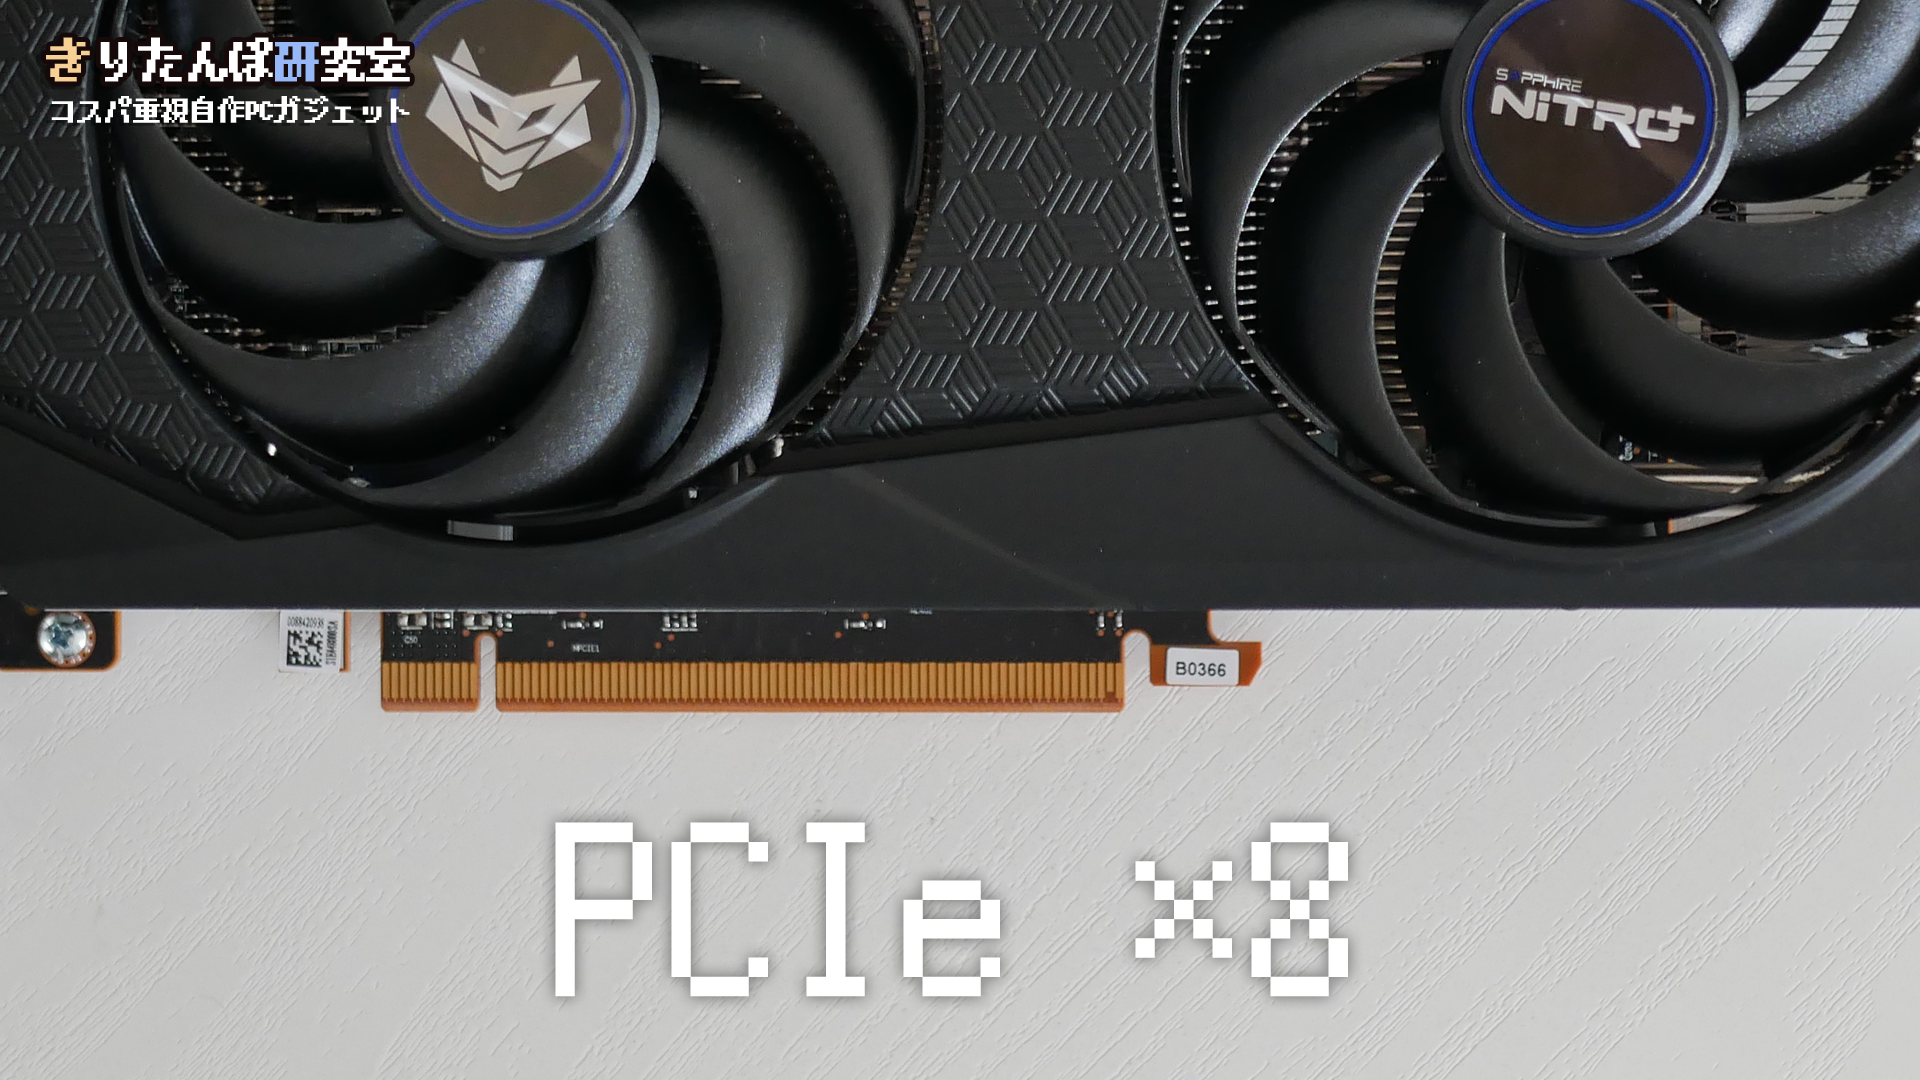 PCIeはx8